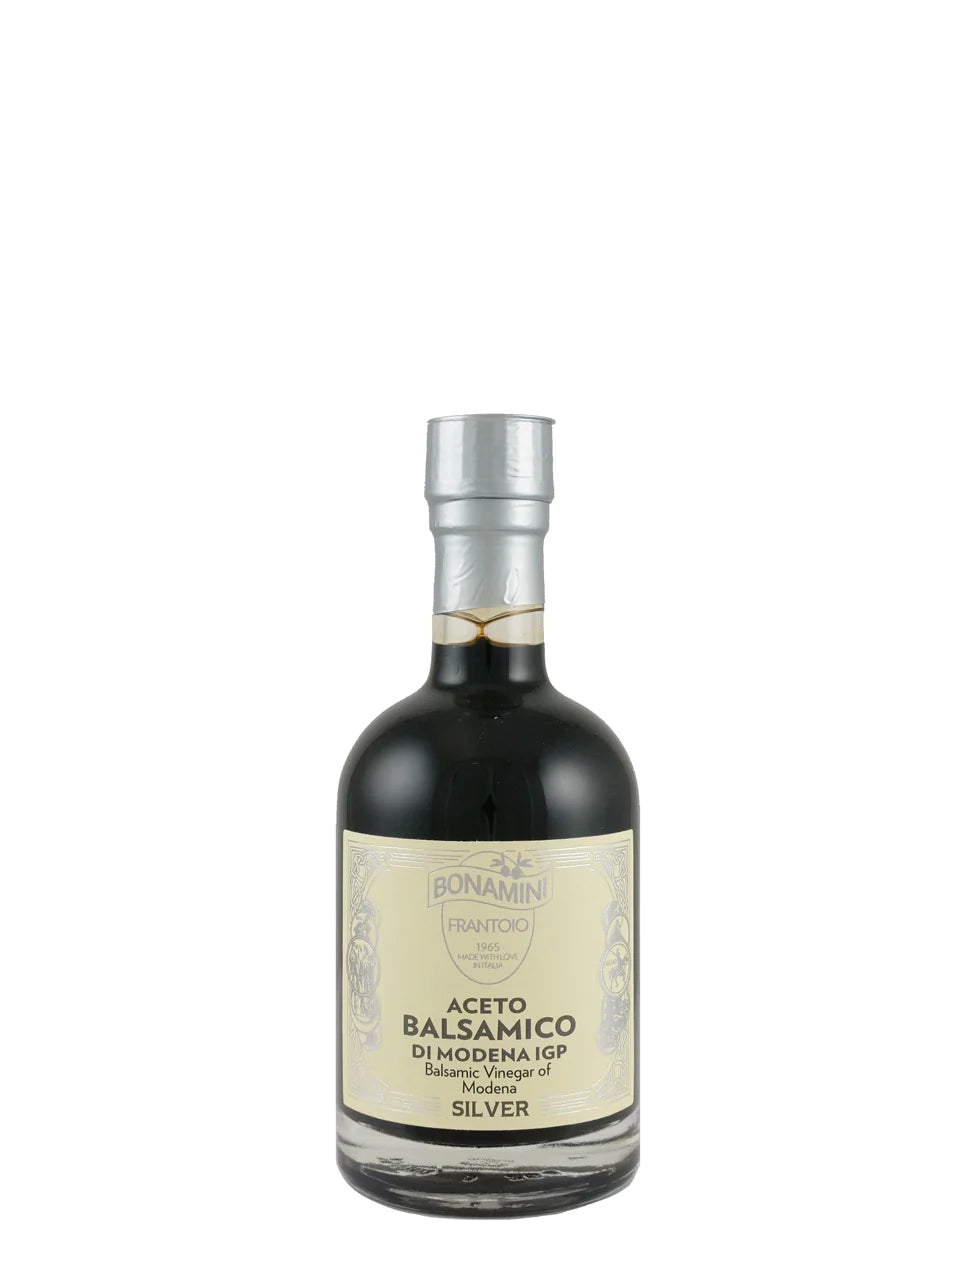 Bonamini Silver Label PGI Balsamic Vinegar of Modena 6-Pack